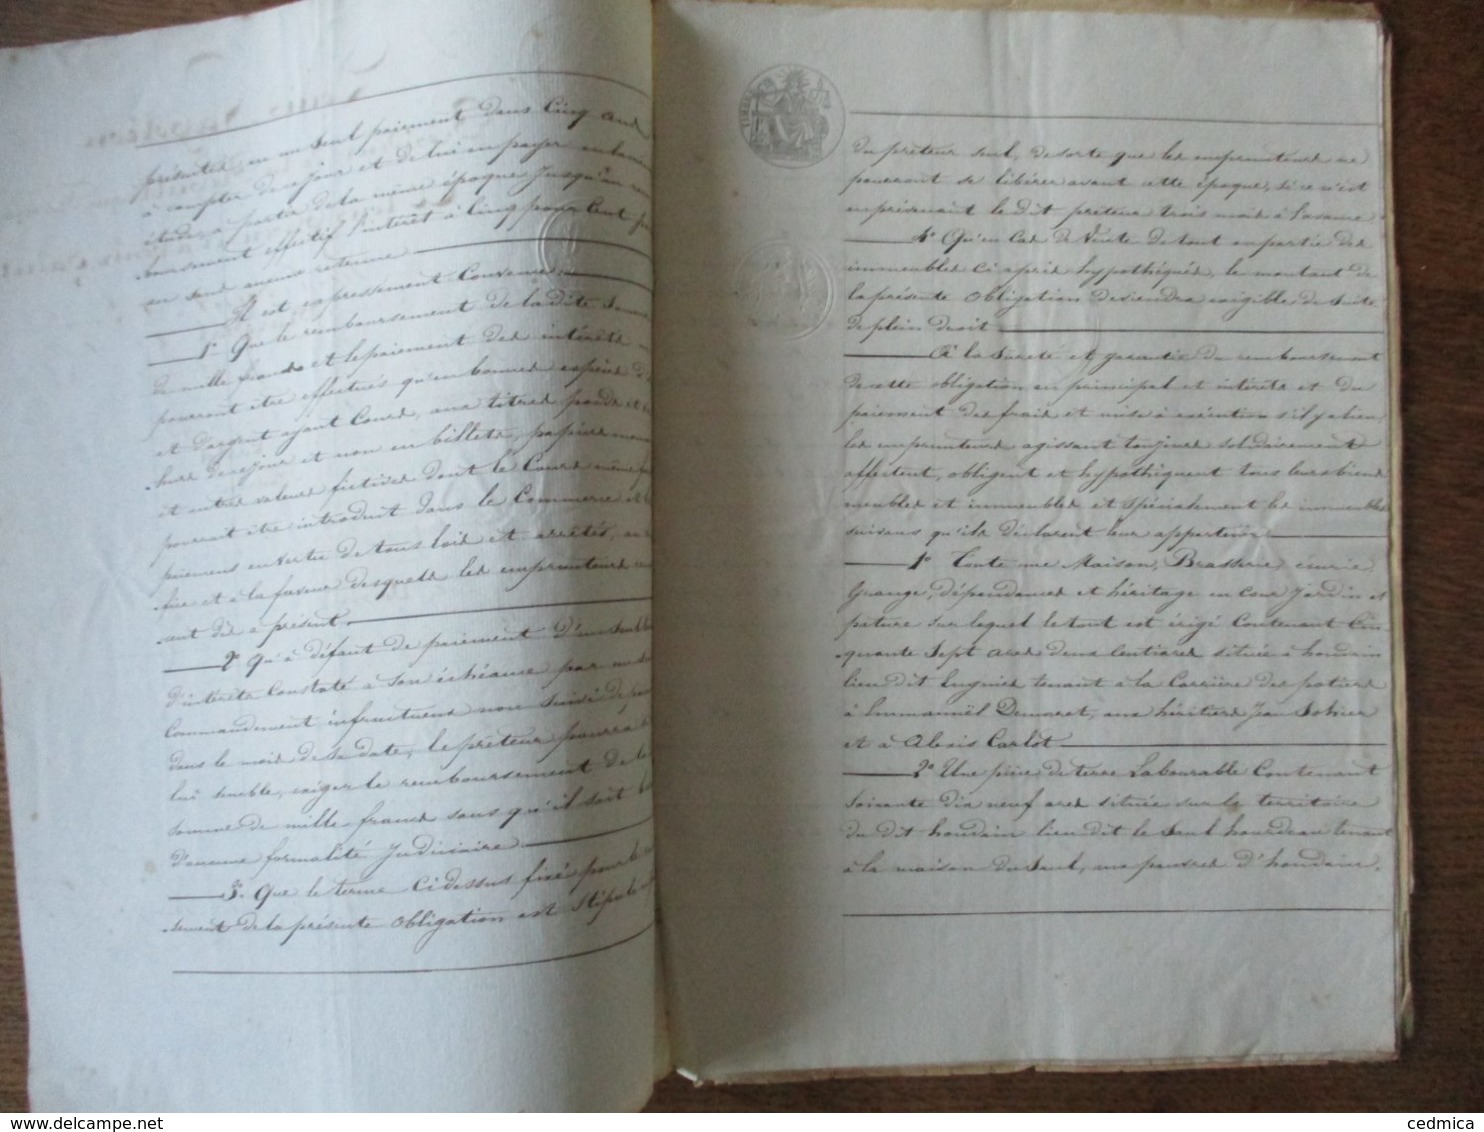 17 AVRIL 1852 OBLIGATION PAR LE SIEUR CARLOT MARCHAND BRASSEUR A HOUDAIN ET DAME SOPHIE MARIN SON EPOUSE A M.AUGUSTE VO - Manuscrits